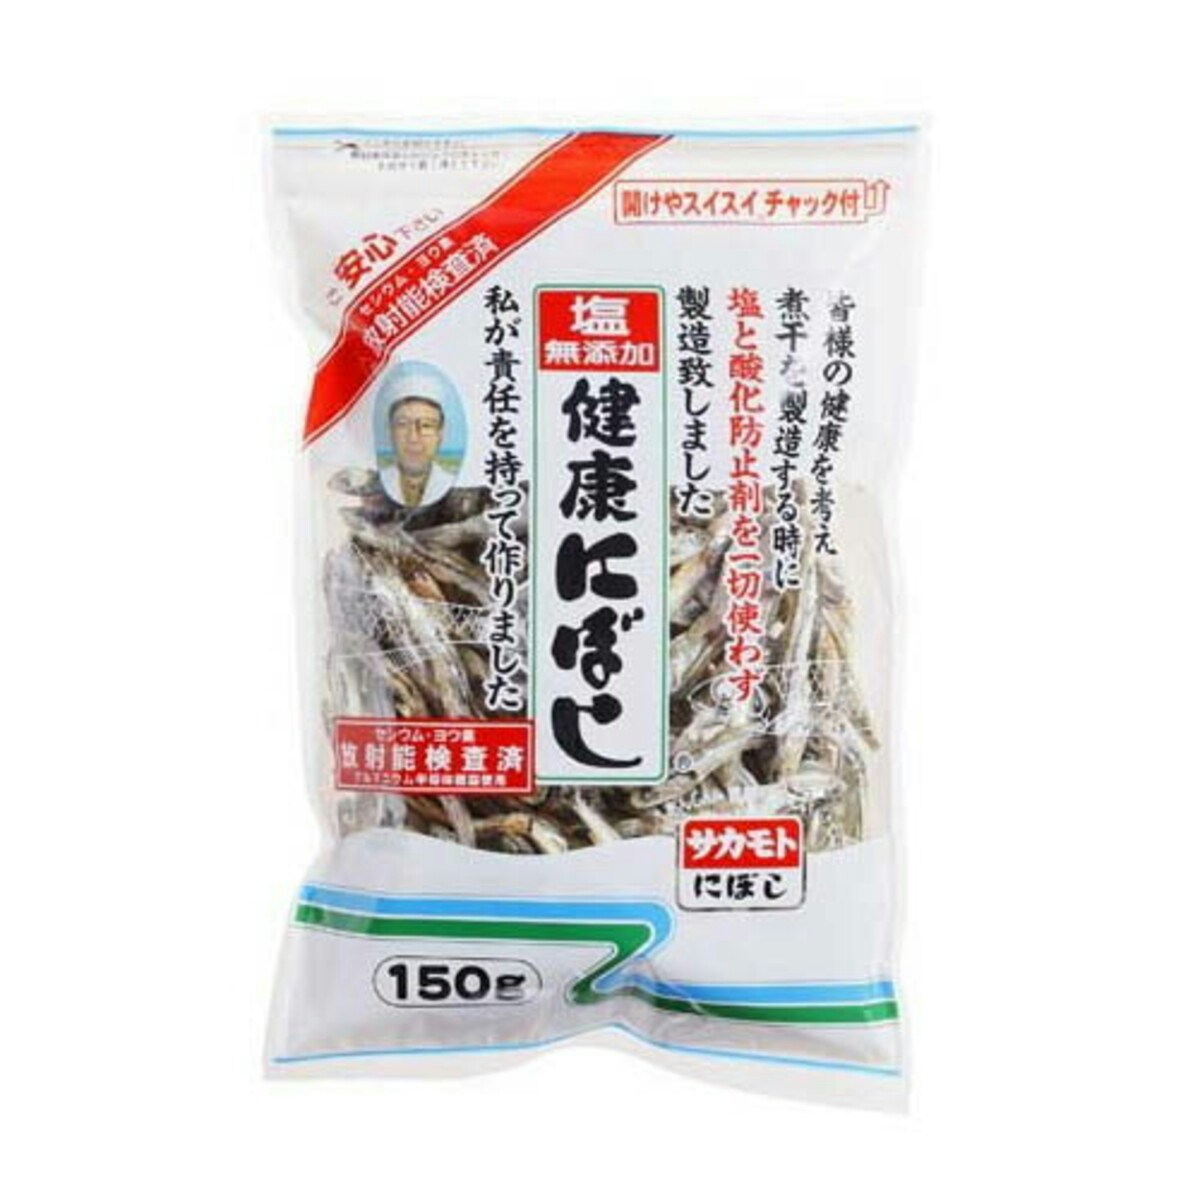 サカモト 塩無添加健康にぼし(片口) 150g